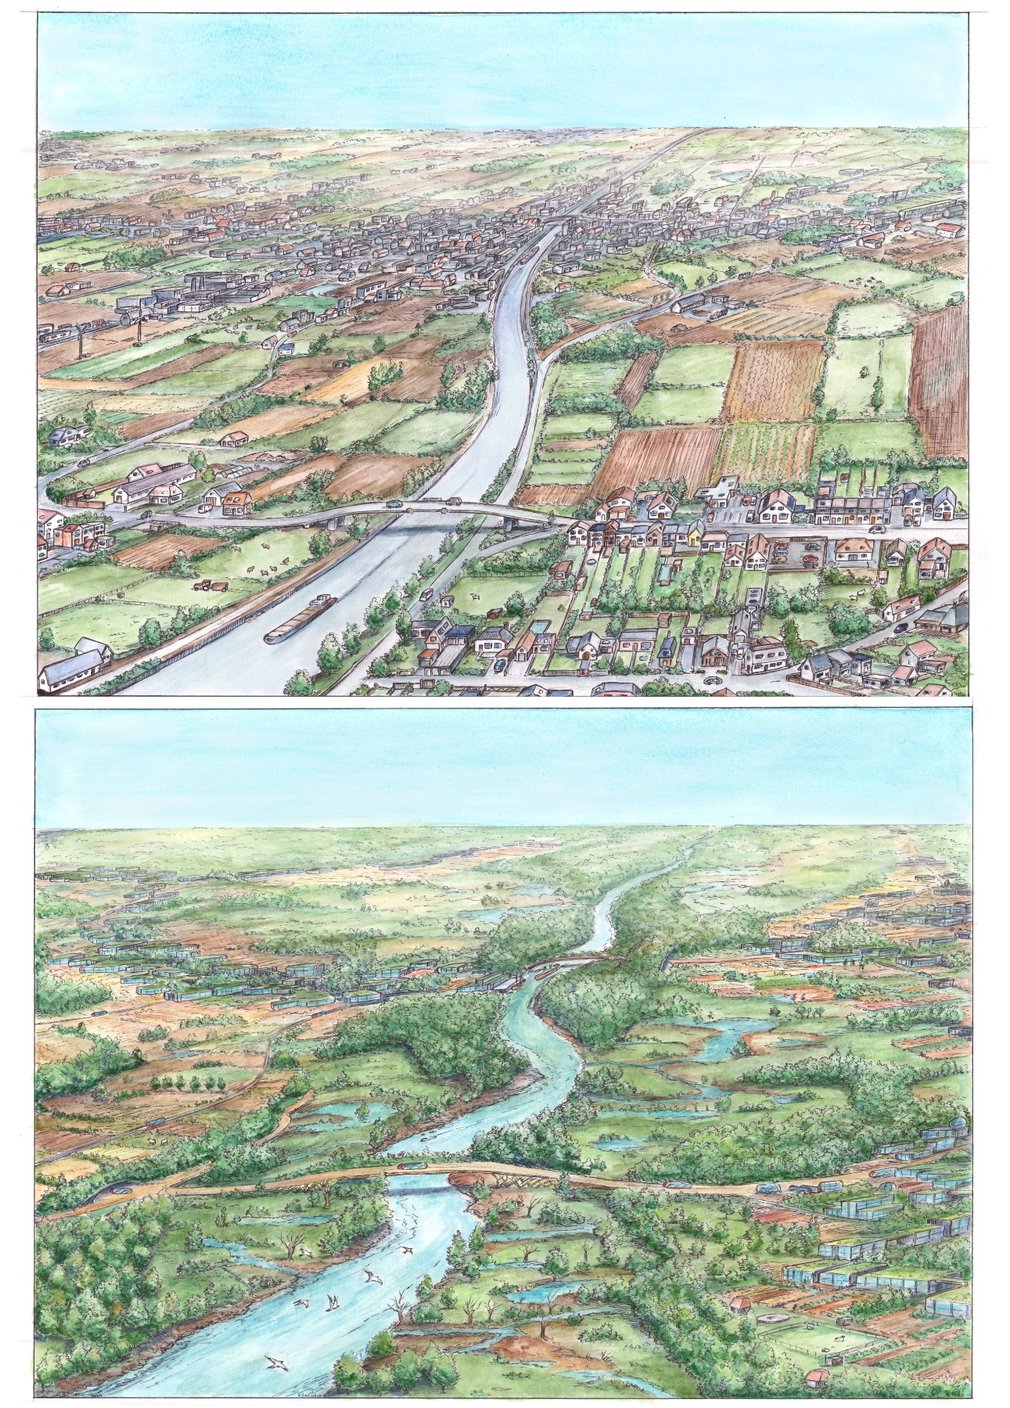 River-landscape-before-after